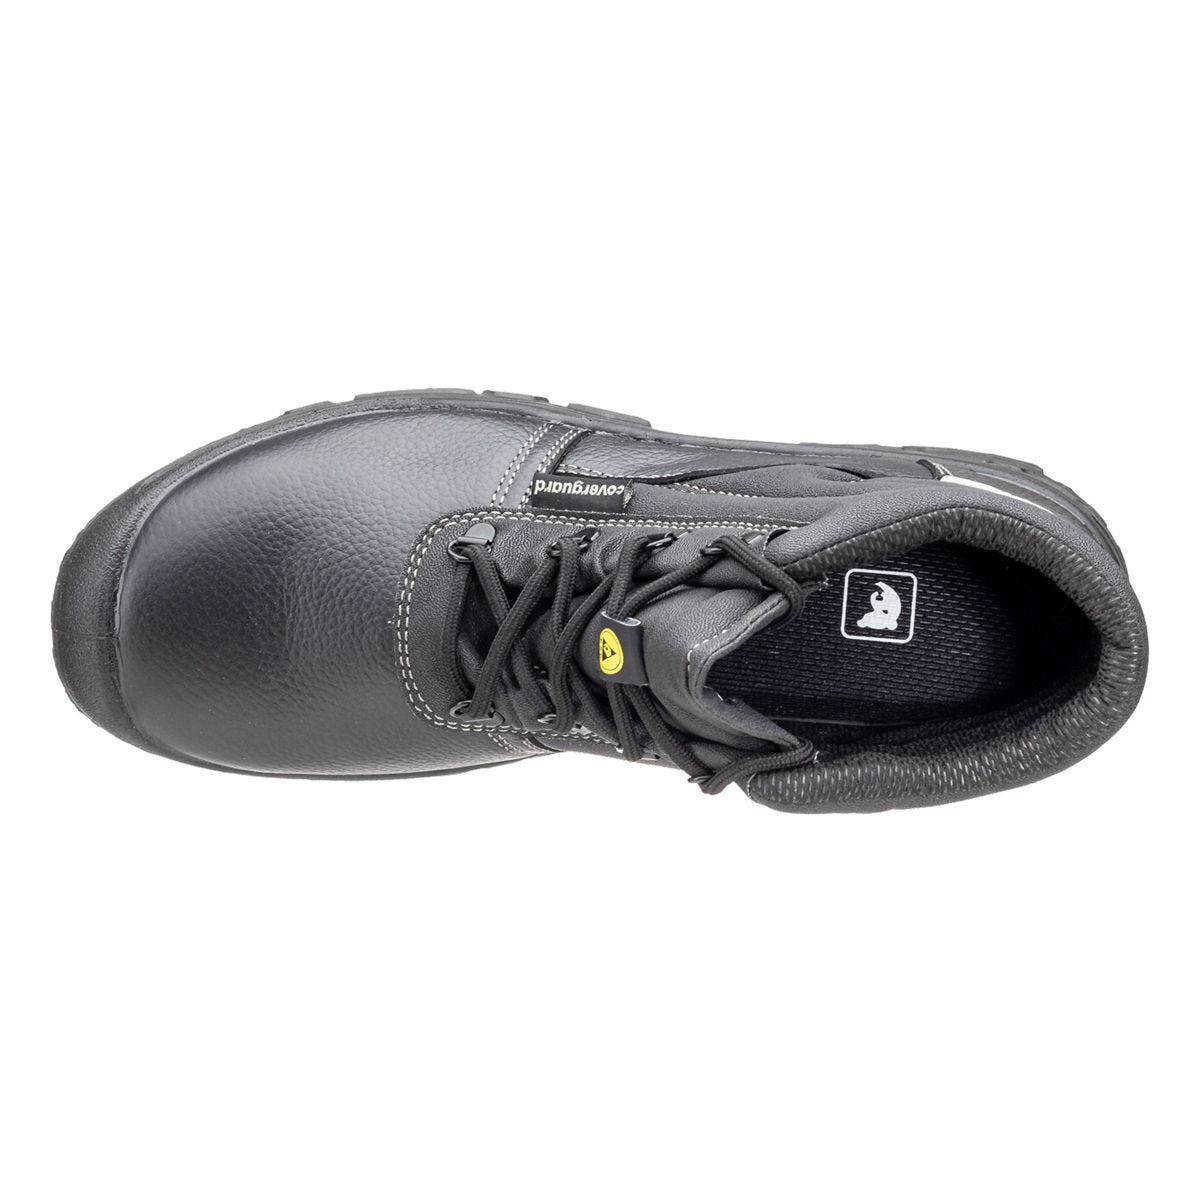 Chaussures de sécurité hautes Azurite II S3 ESD noir - Coverguard - Taille 38 3